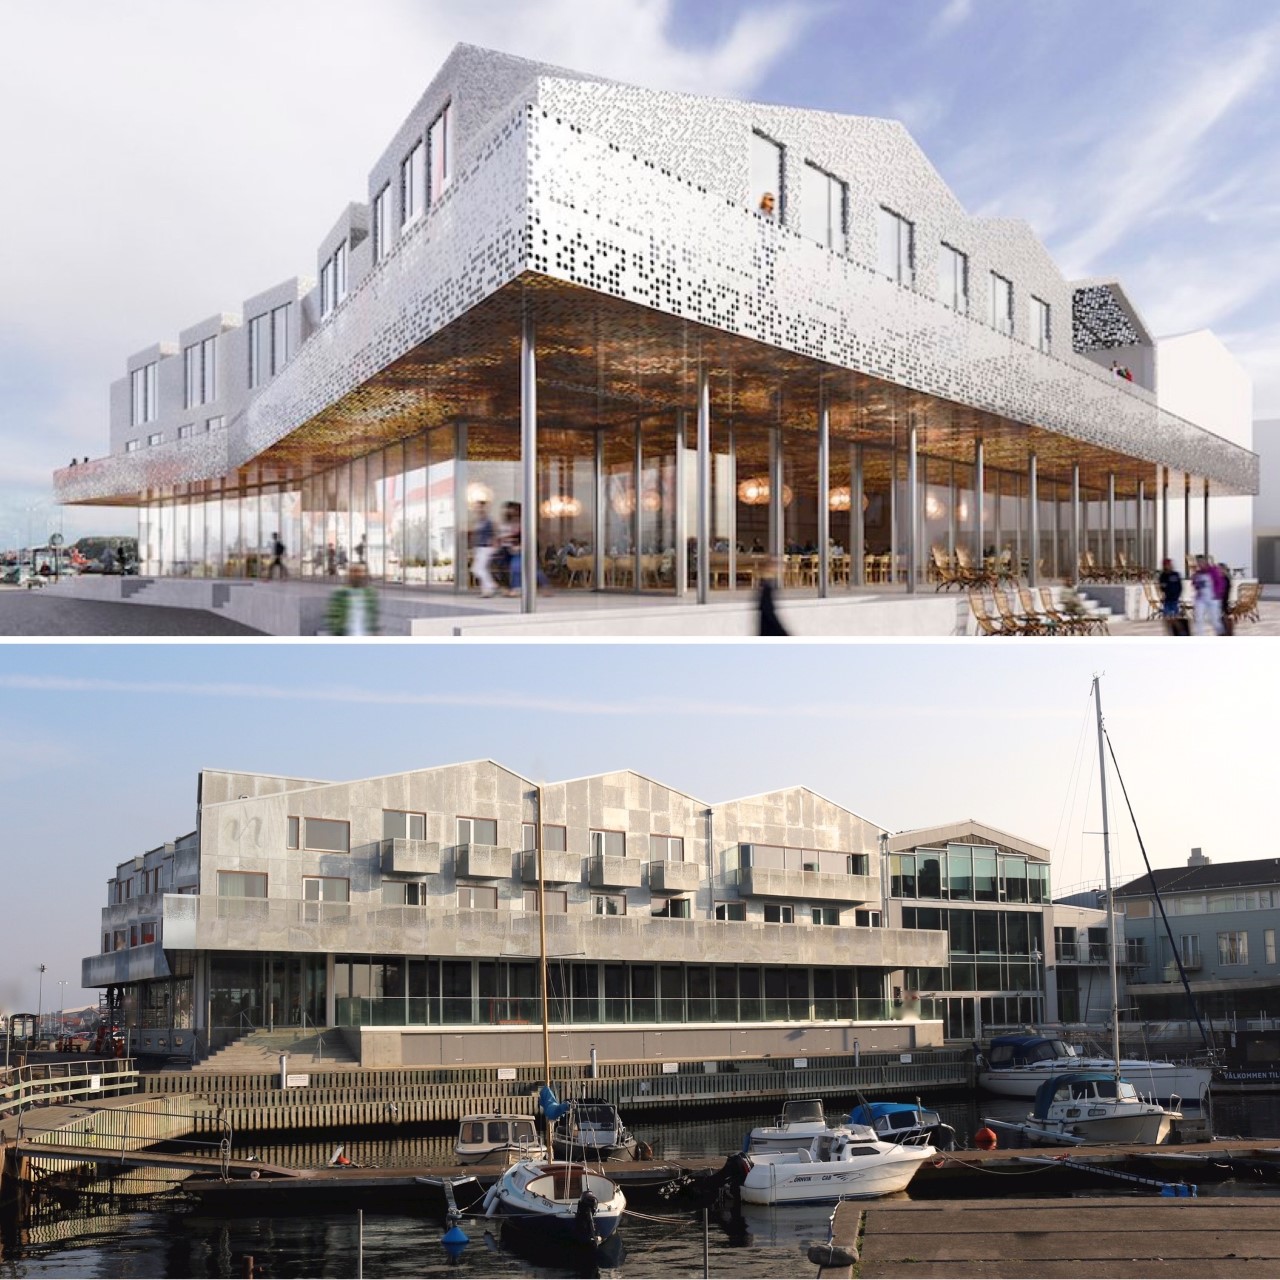 Är Marstrands Havshotell årets fake view 2020?